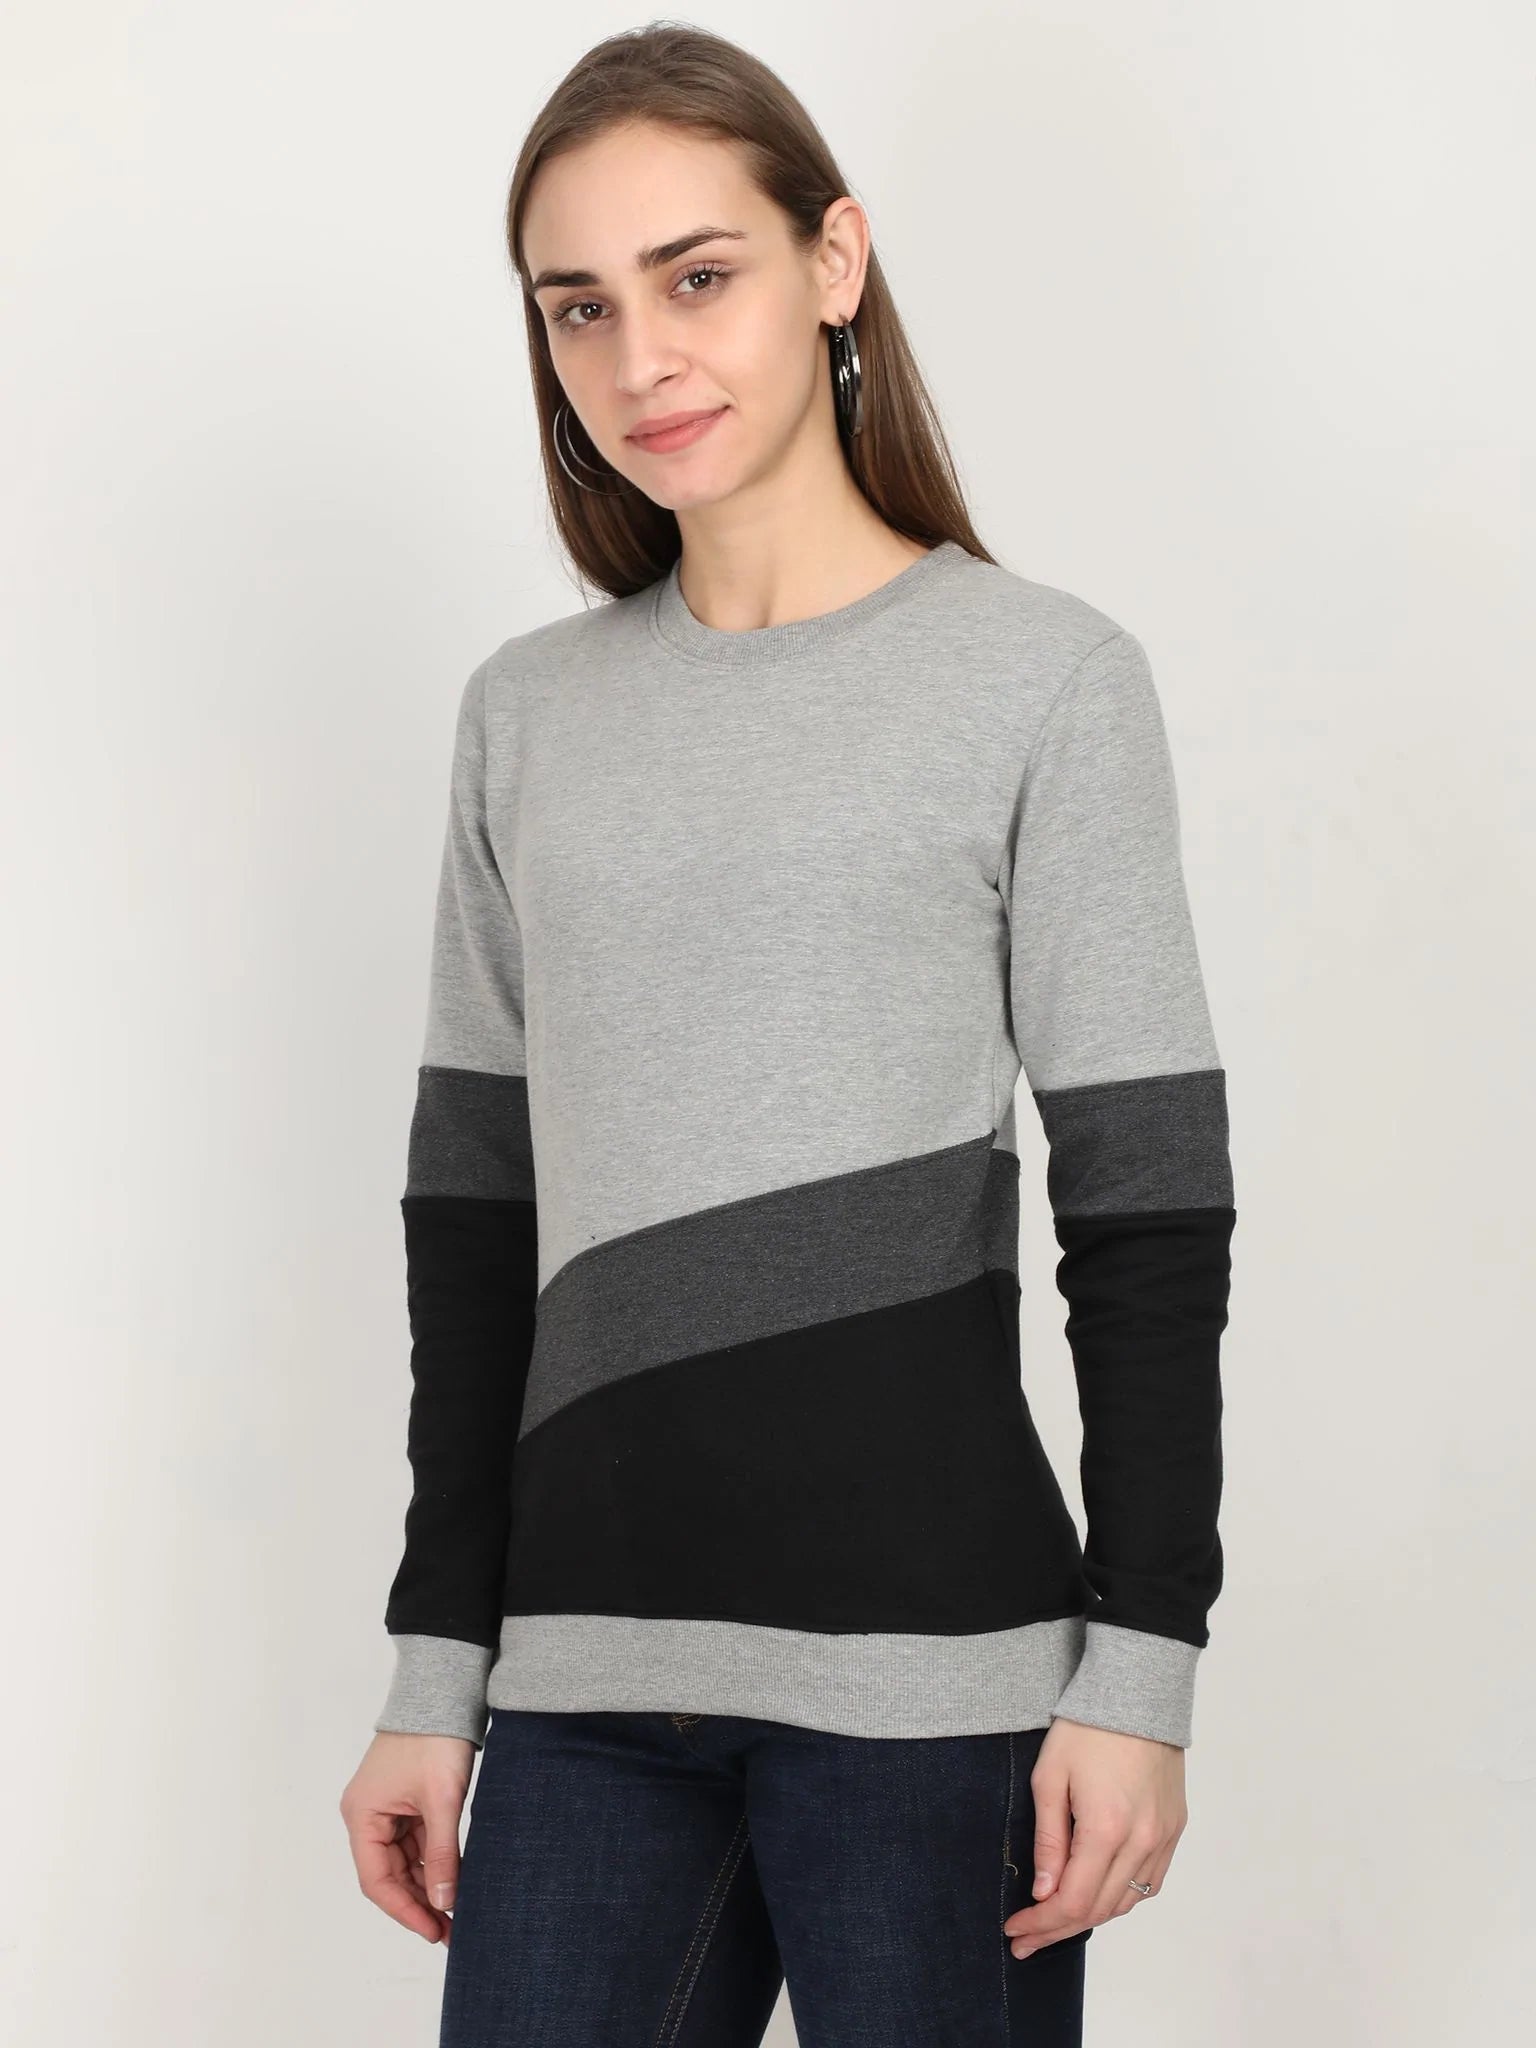 Fleximaa Women's Cotton Color Block Full Sleeve Sweatshirt - fleximaa-so